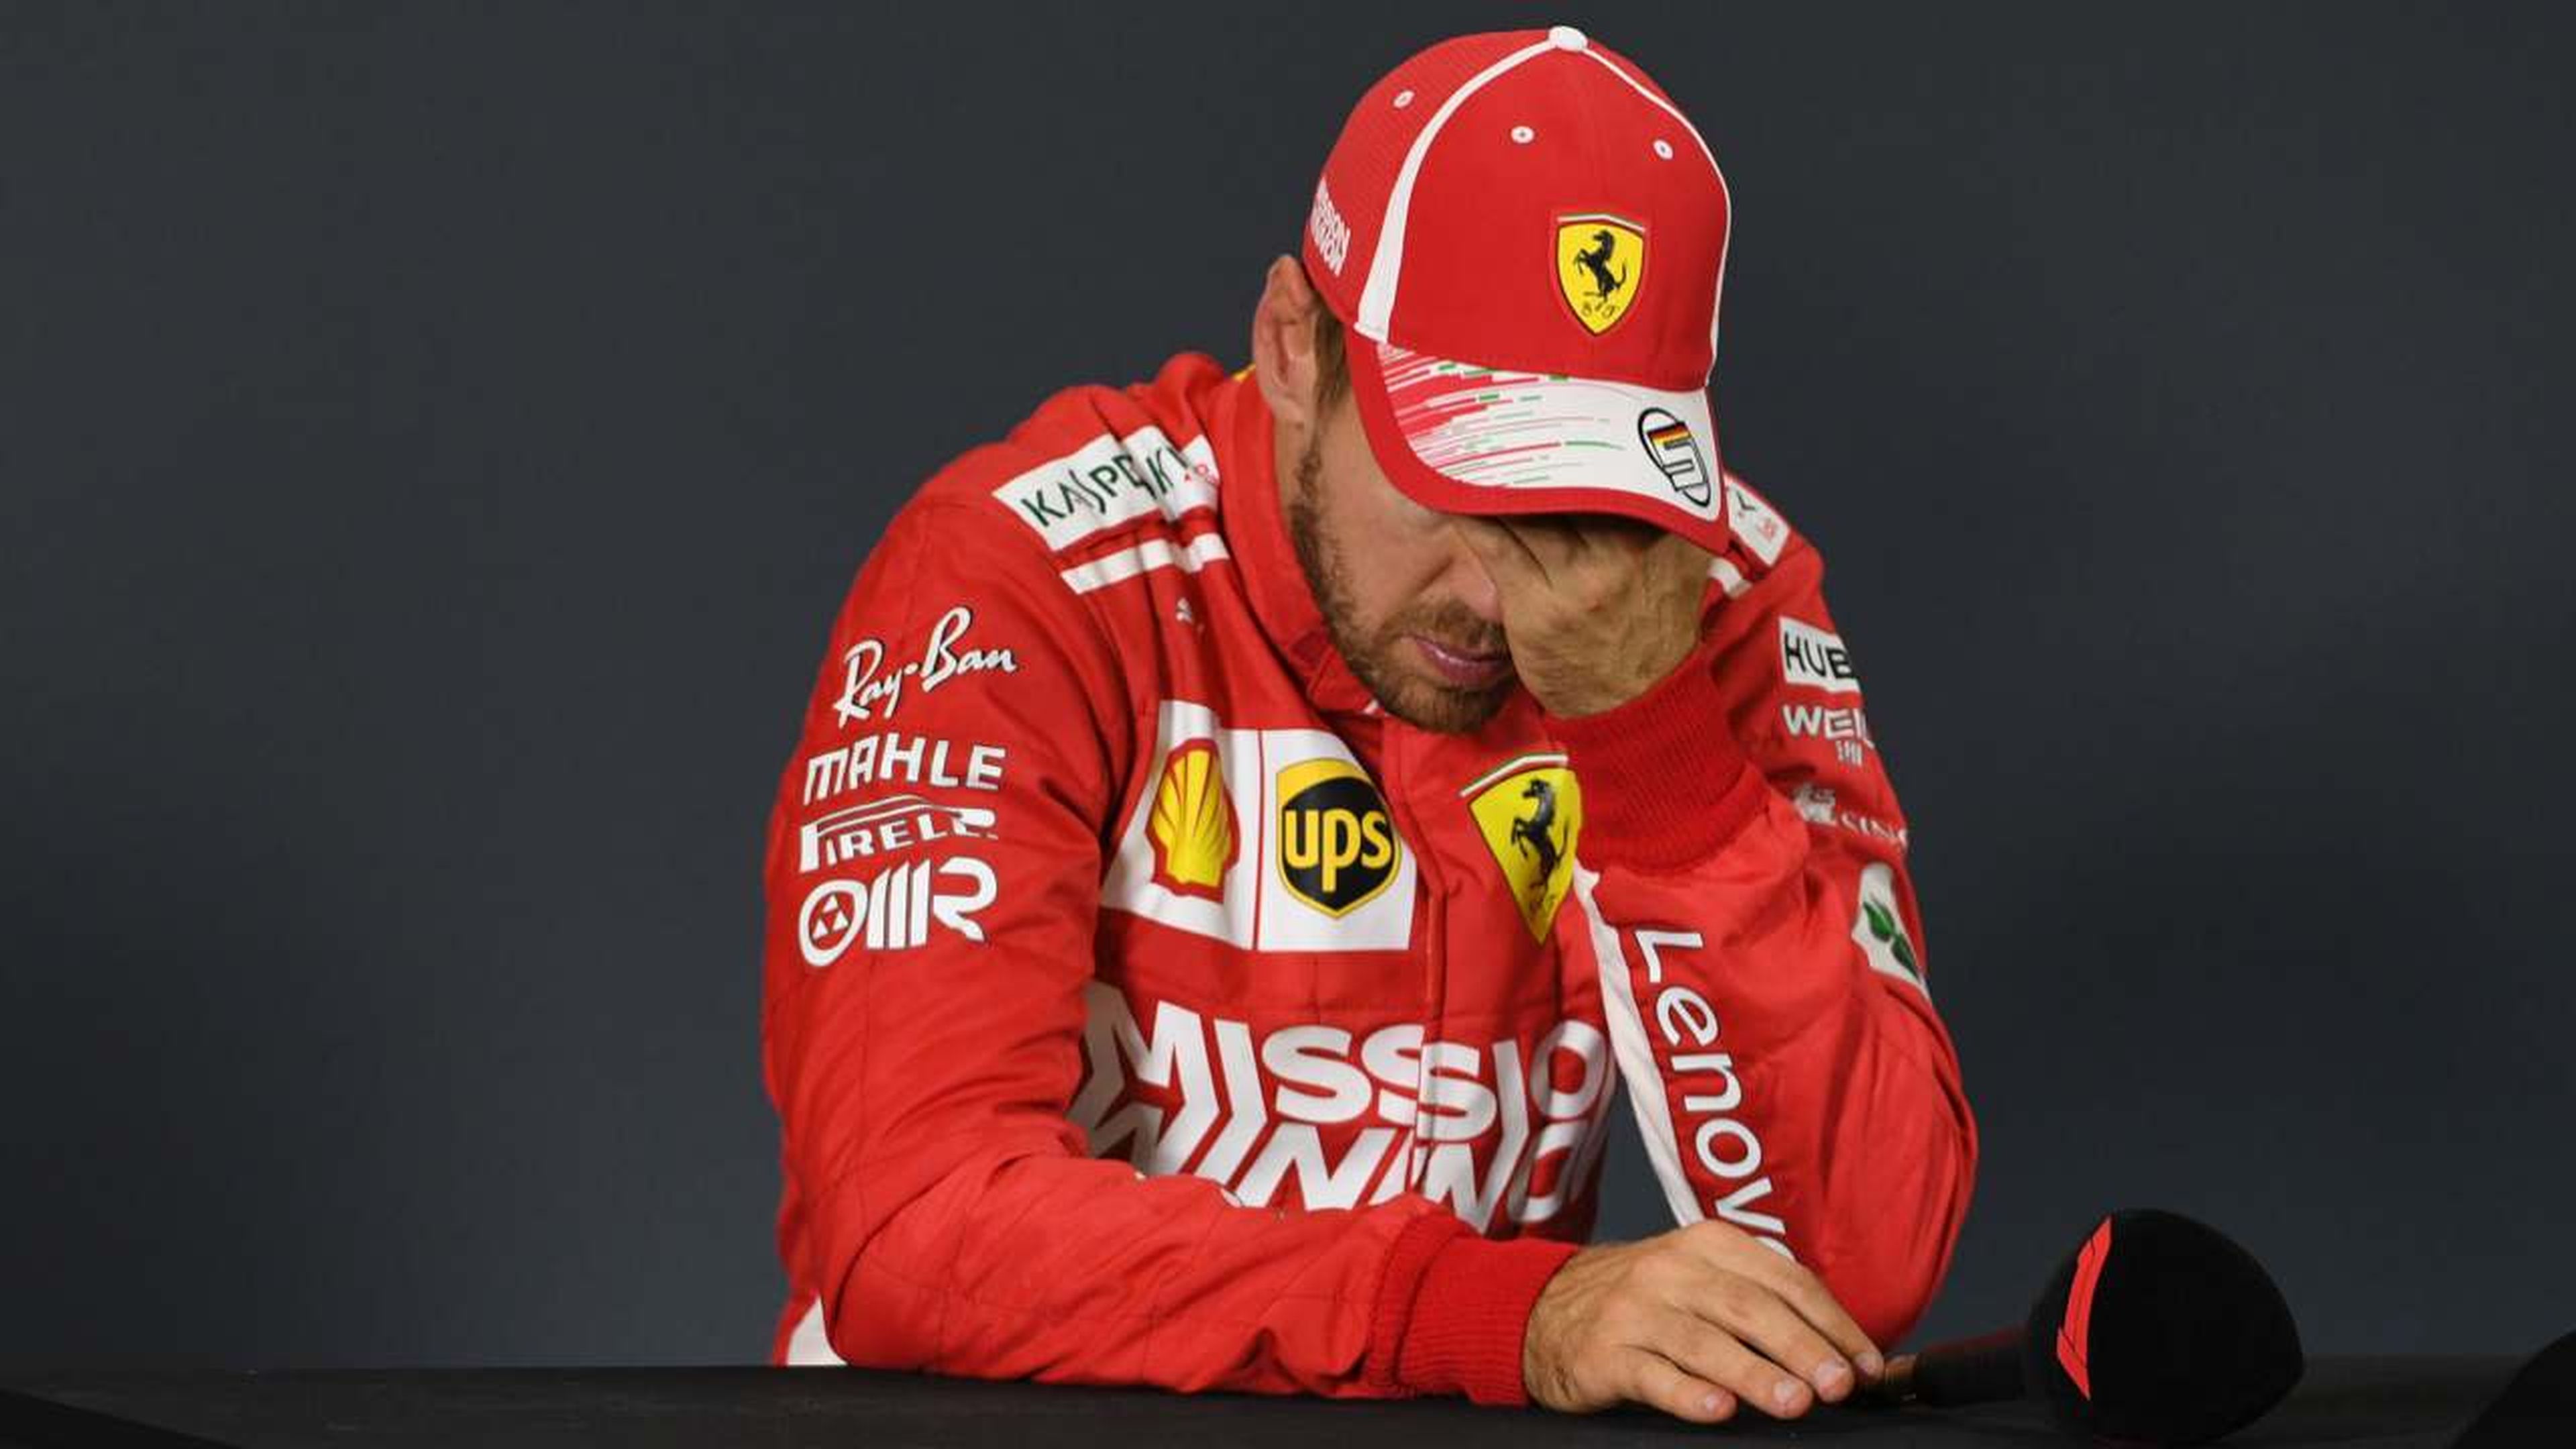 Errores Vettel F1 2018